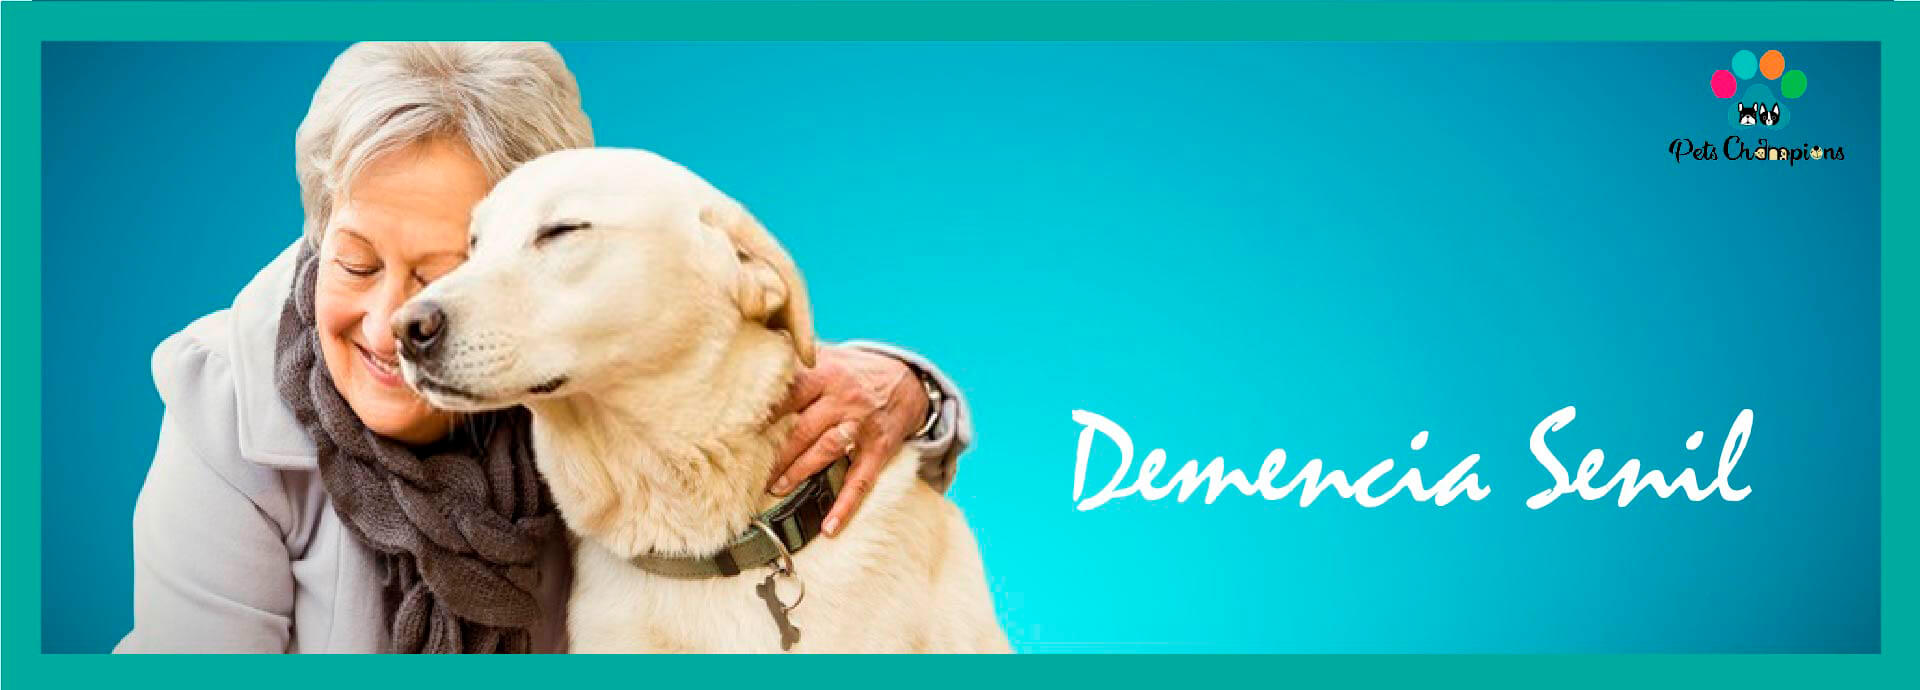 Demencia Senil en Perros: Intervención Dietética y Comportamiento